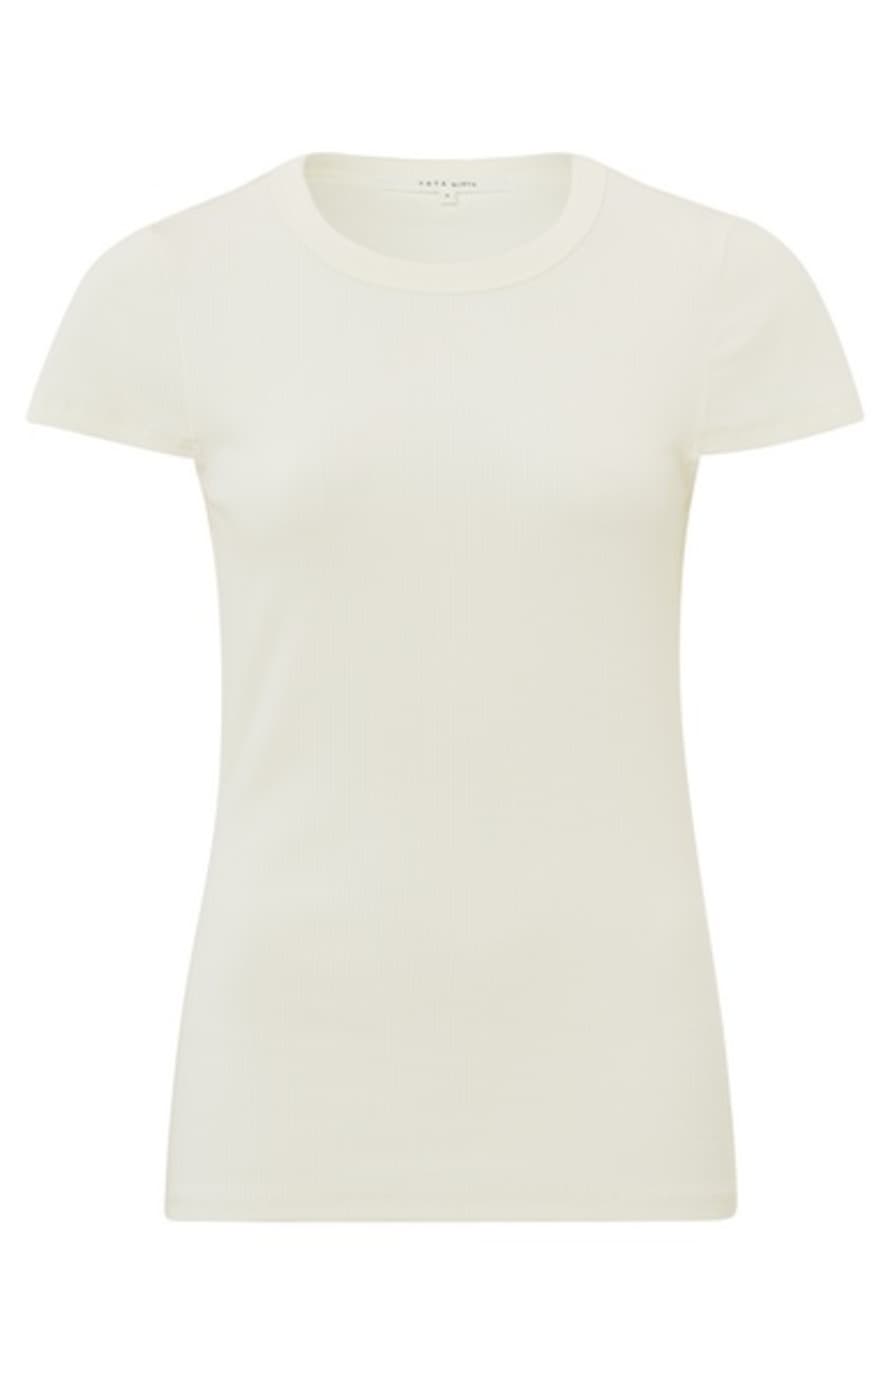 Yaya Rib T-shirt | Ivory White